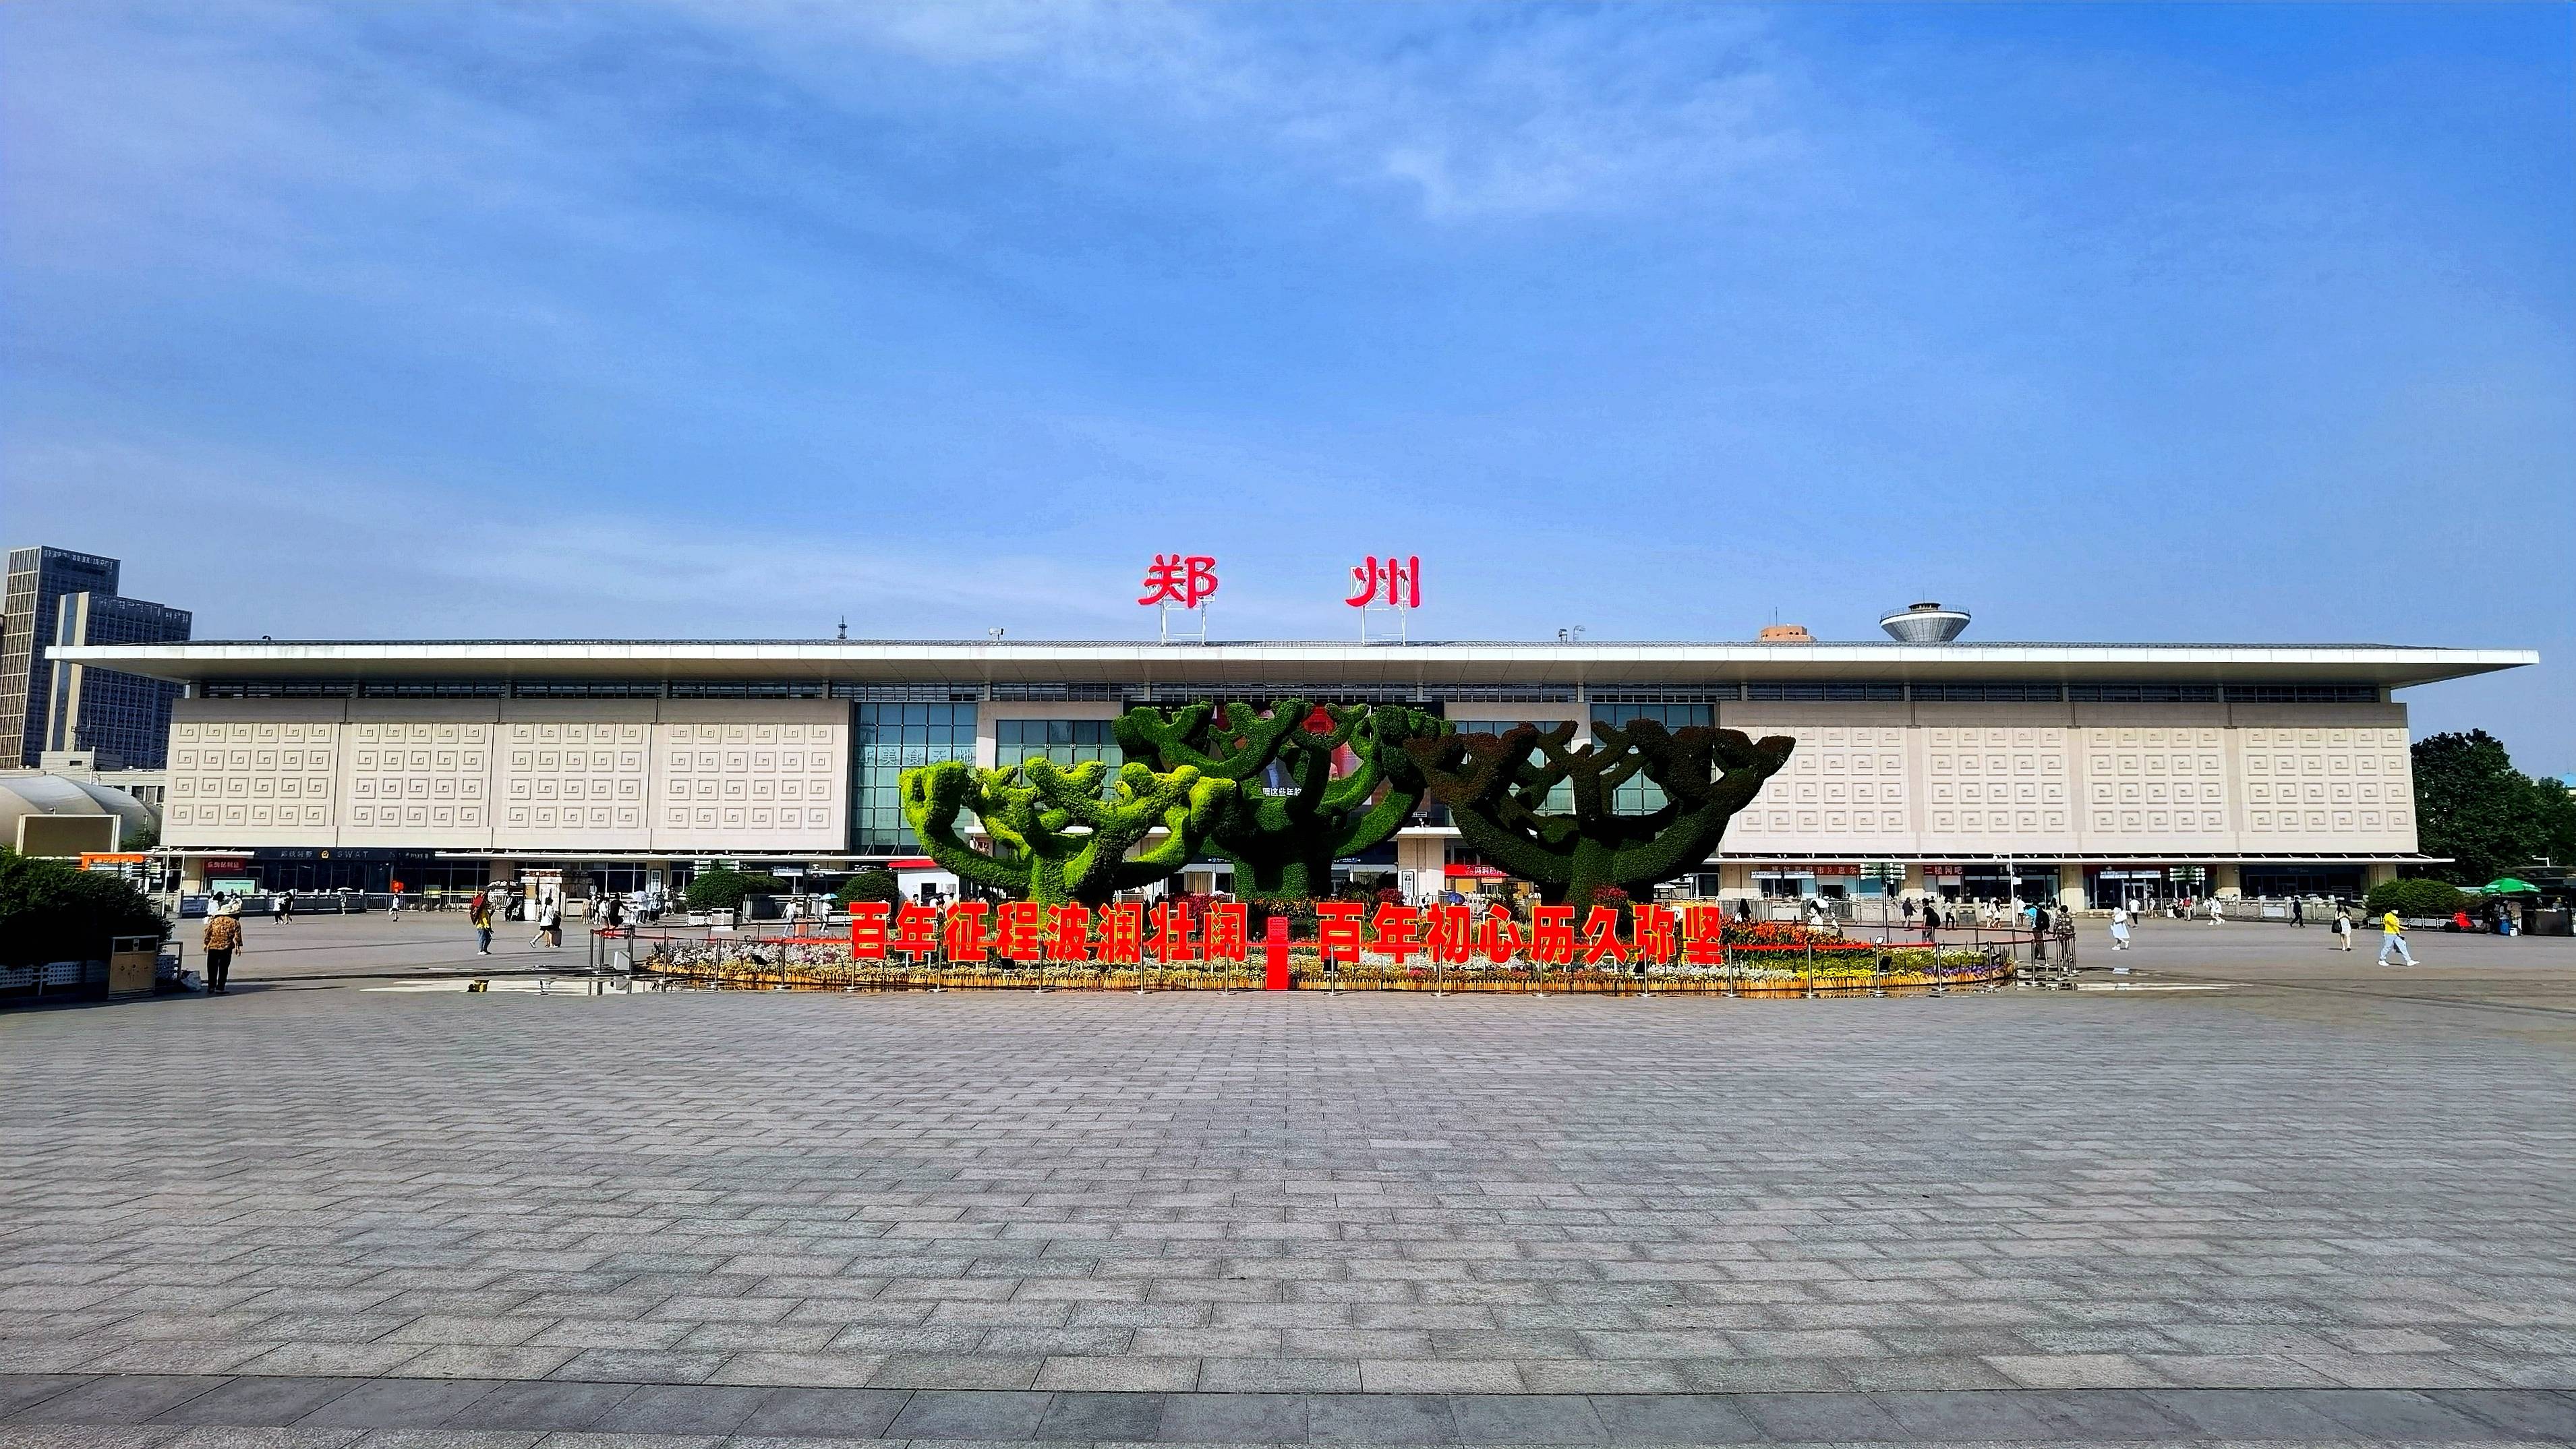 郑州火车站西广场花坛造型寓意,繁荣发和谐共生